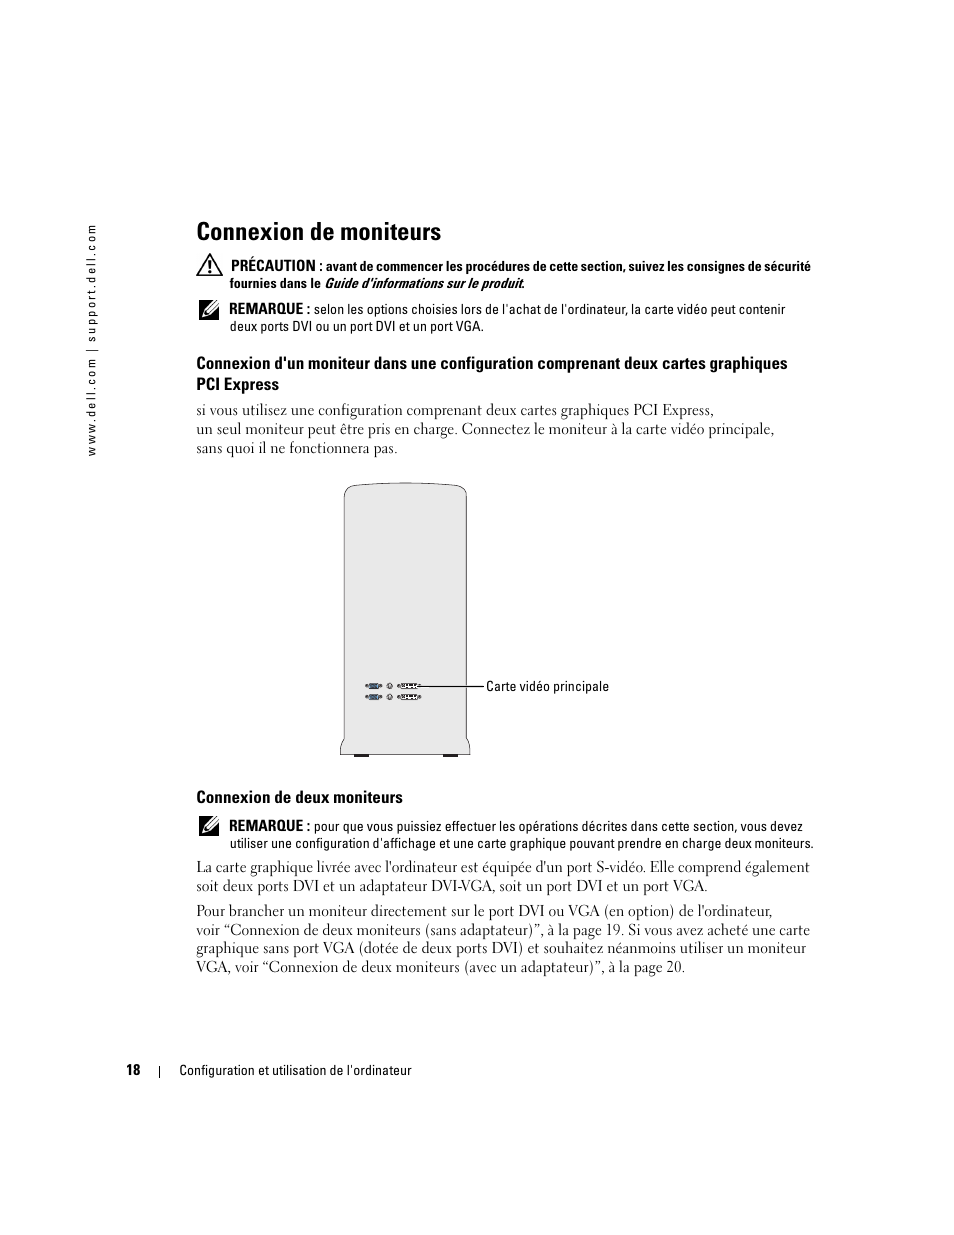 Connexion de moniteurs, Connexion de deux moniteurs | Dell XPS 600 Manuel d'utilisation | Page 18 / 172